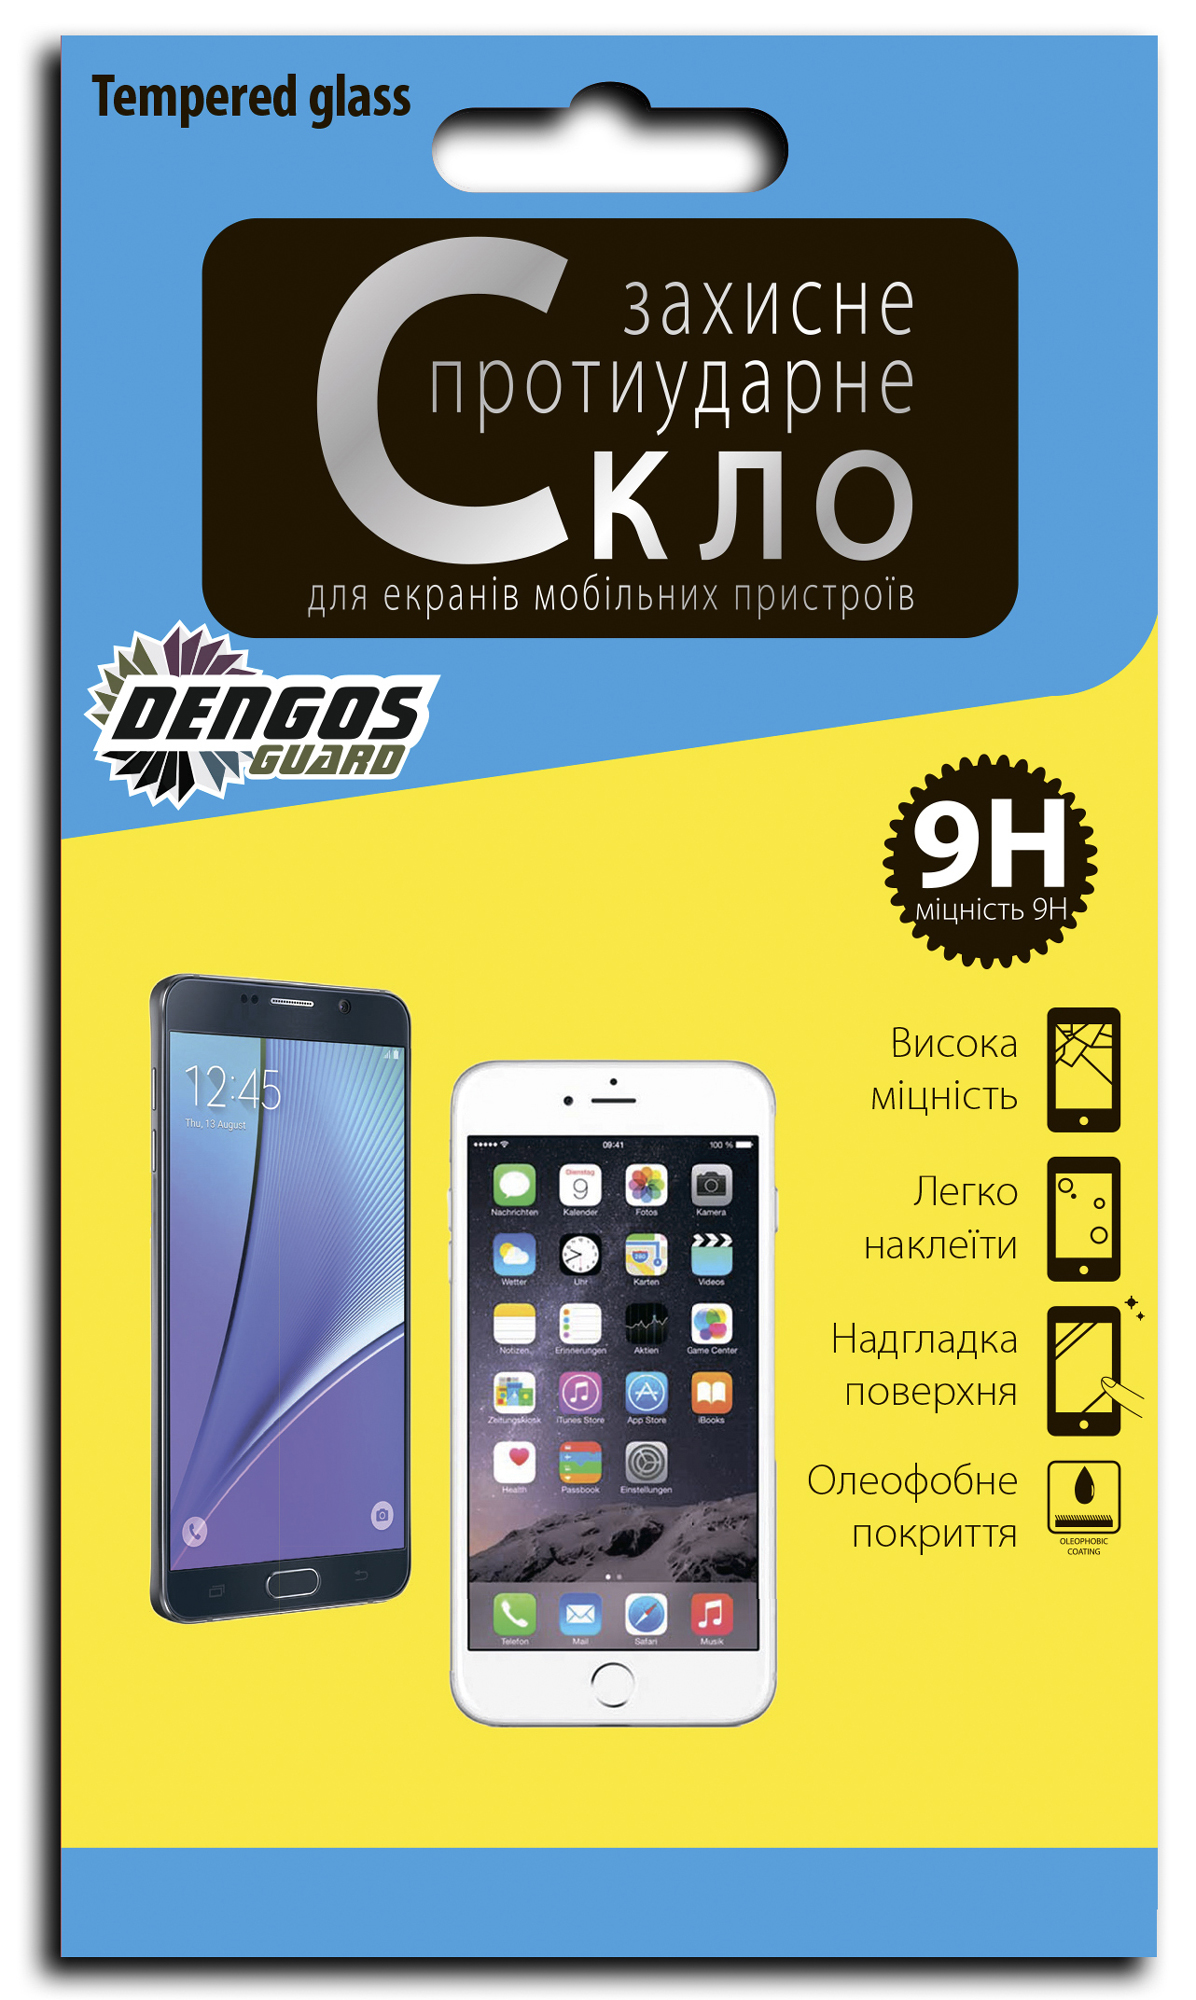 Захисне скло DENGOS 2.5D для Samsung Galaxy А3 2017 (А320) (TG-103) в Києві